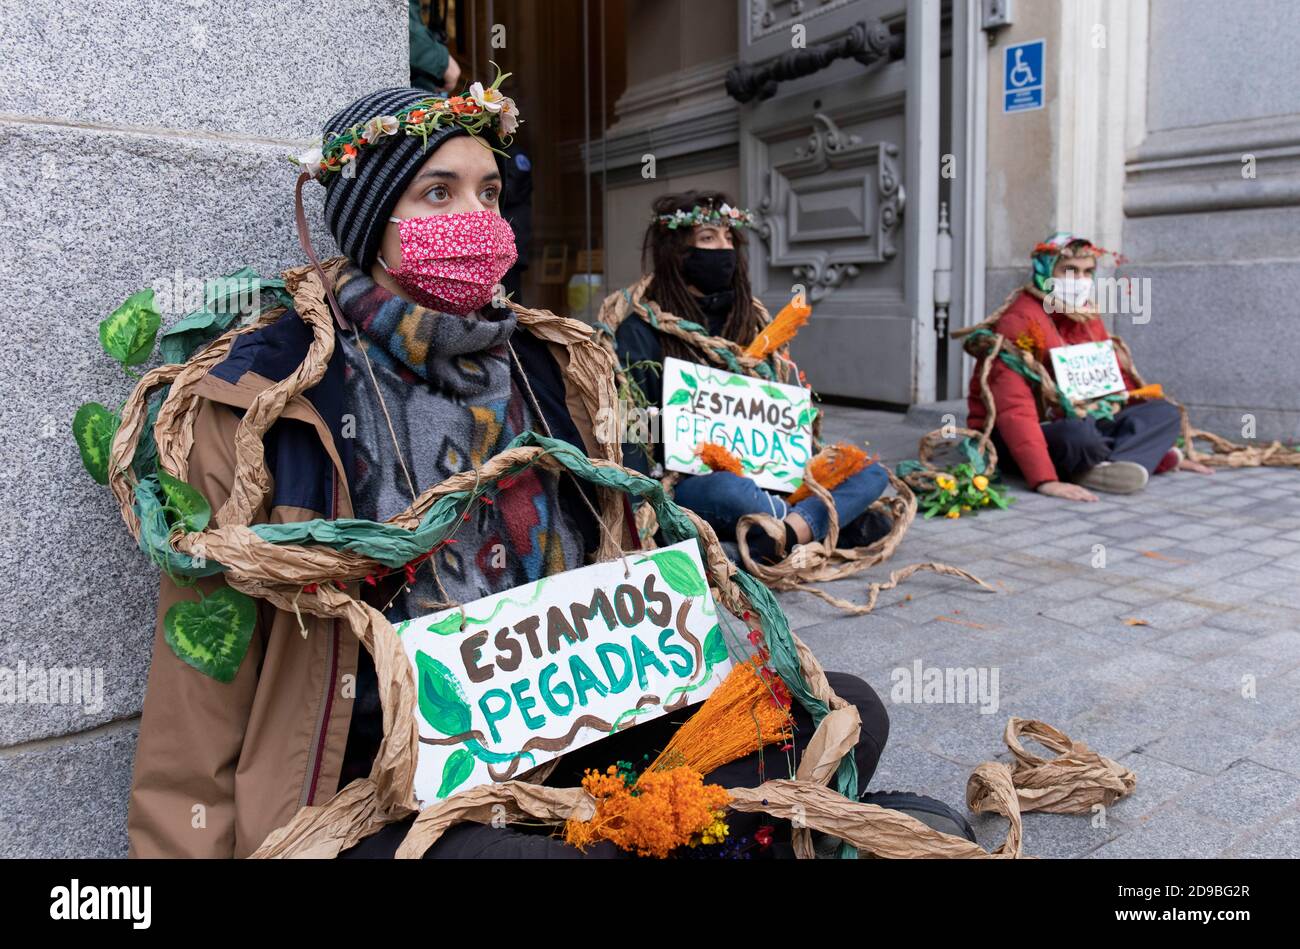 Gli attivisti che indossano il facemask sono visti incollati al marciapiede del Ministero dell'Agricoltura mentre portano i cartelli che riportano "siamo incollati" durante la dimostrazione.durante la terza ribellione internazionale, il movimento della ribellione estinzione ha bloccato l'ingresso del Ministero dell'Agricoltura questa mattina per rivendicare la protezione della biodiversità a Madrid. Foto Stock